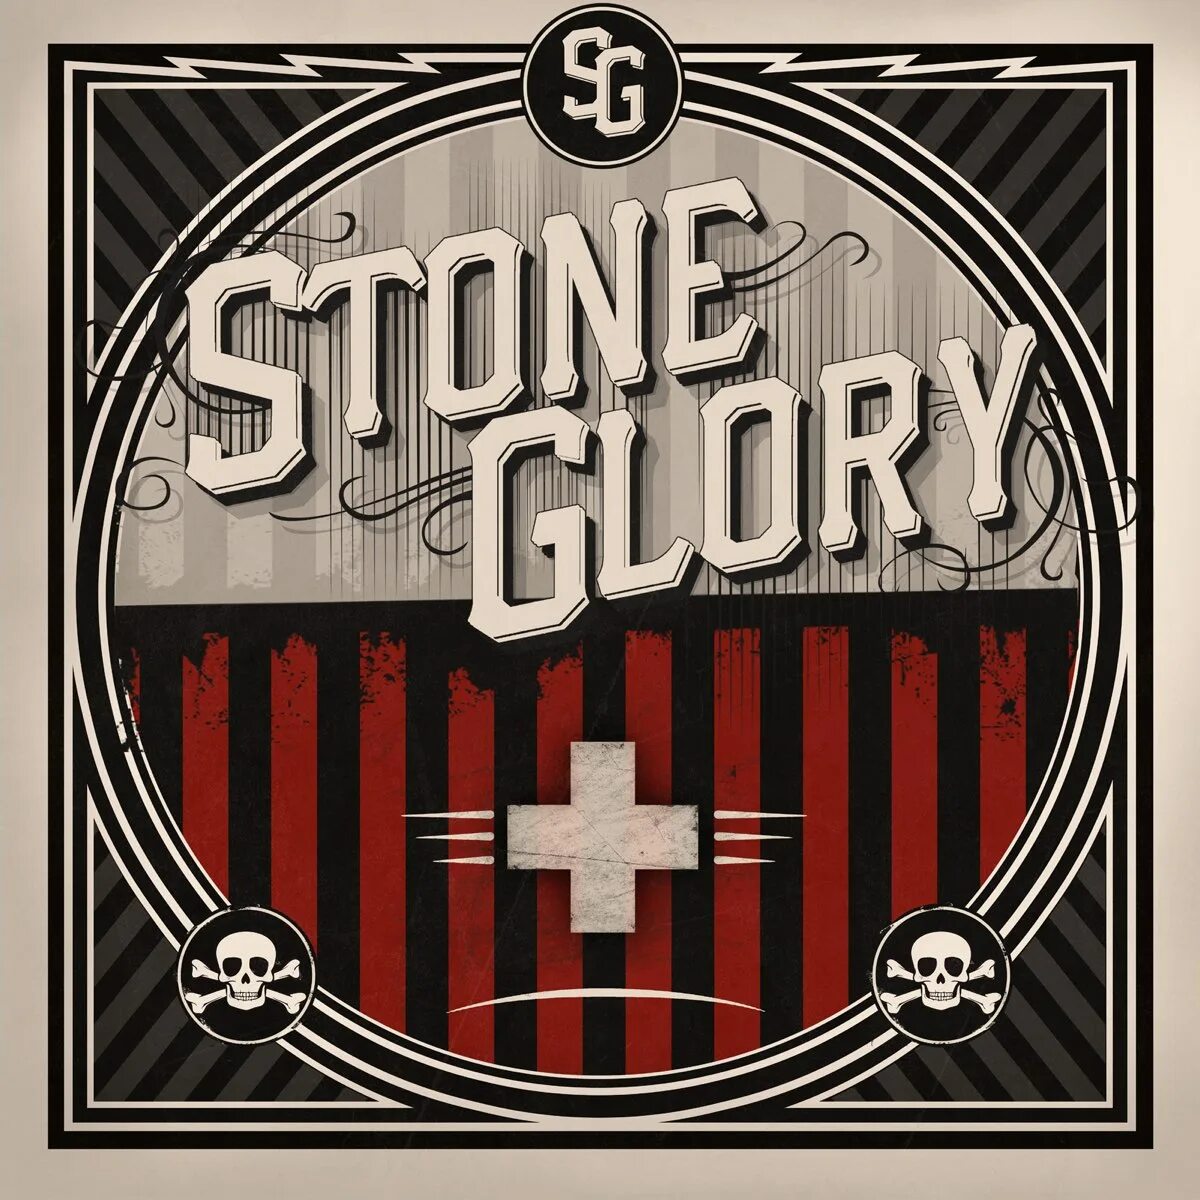 Stones трек. Glory Rocks. Hard Rock Classic. Обложка в стиле Glory. Glory Rocks модель.